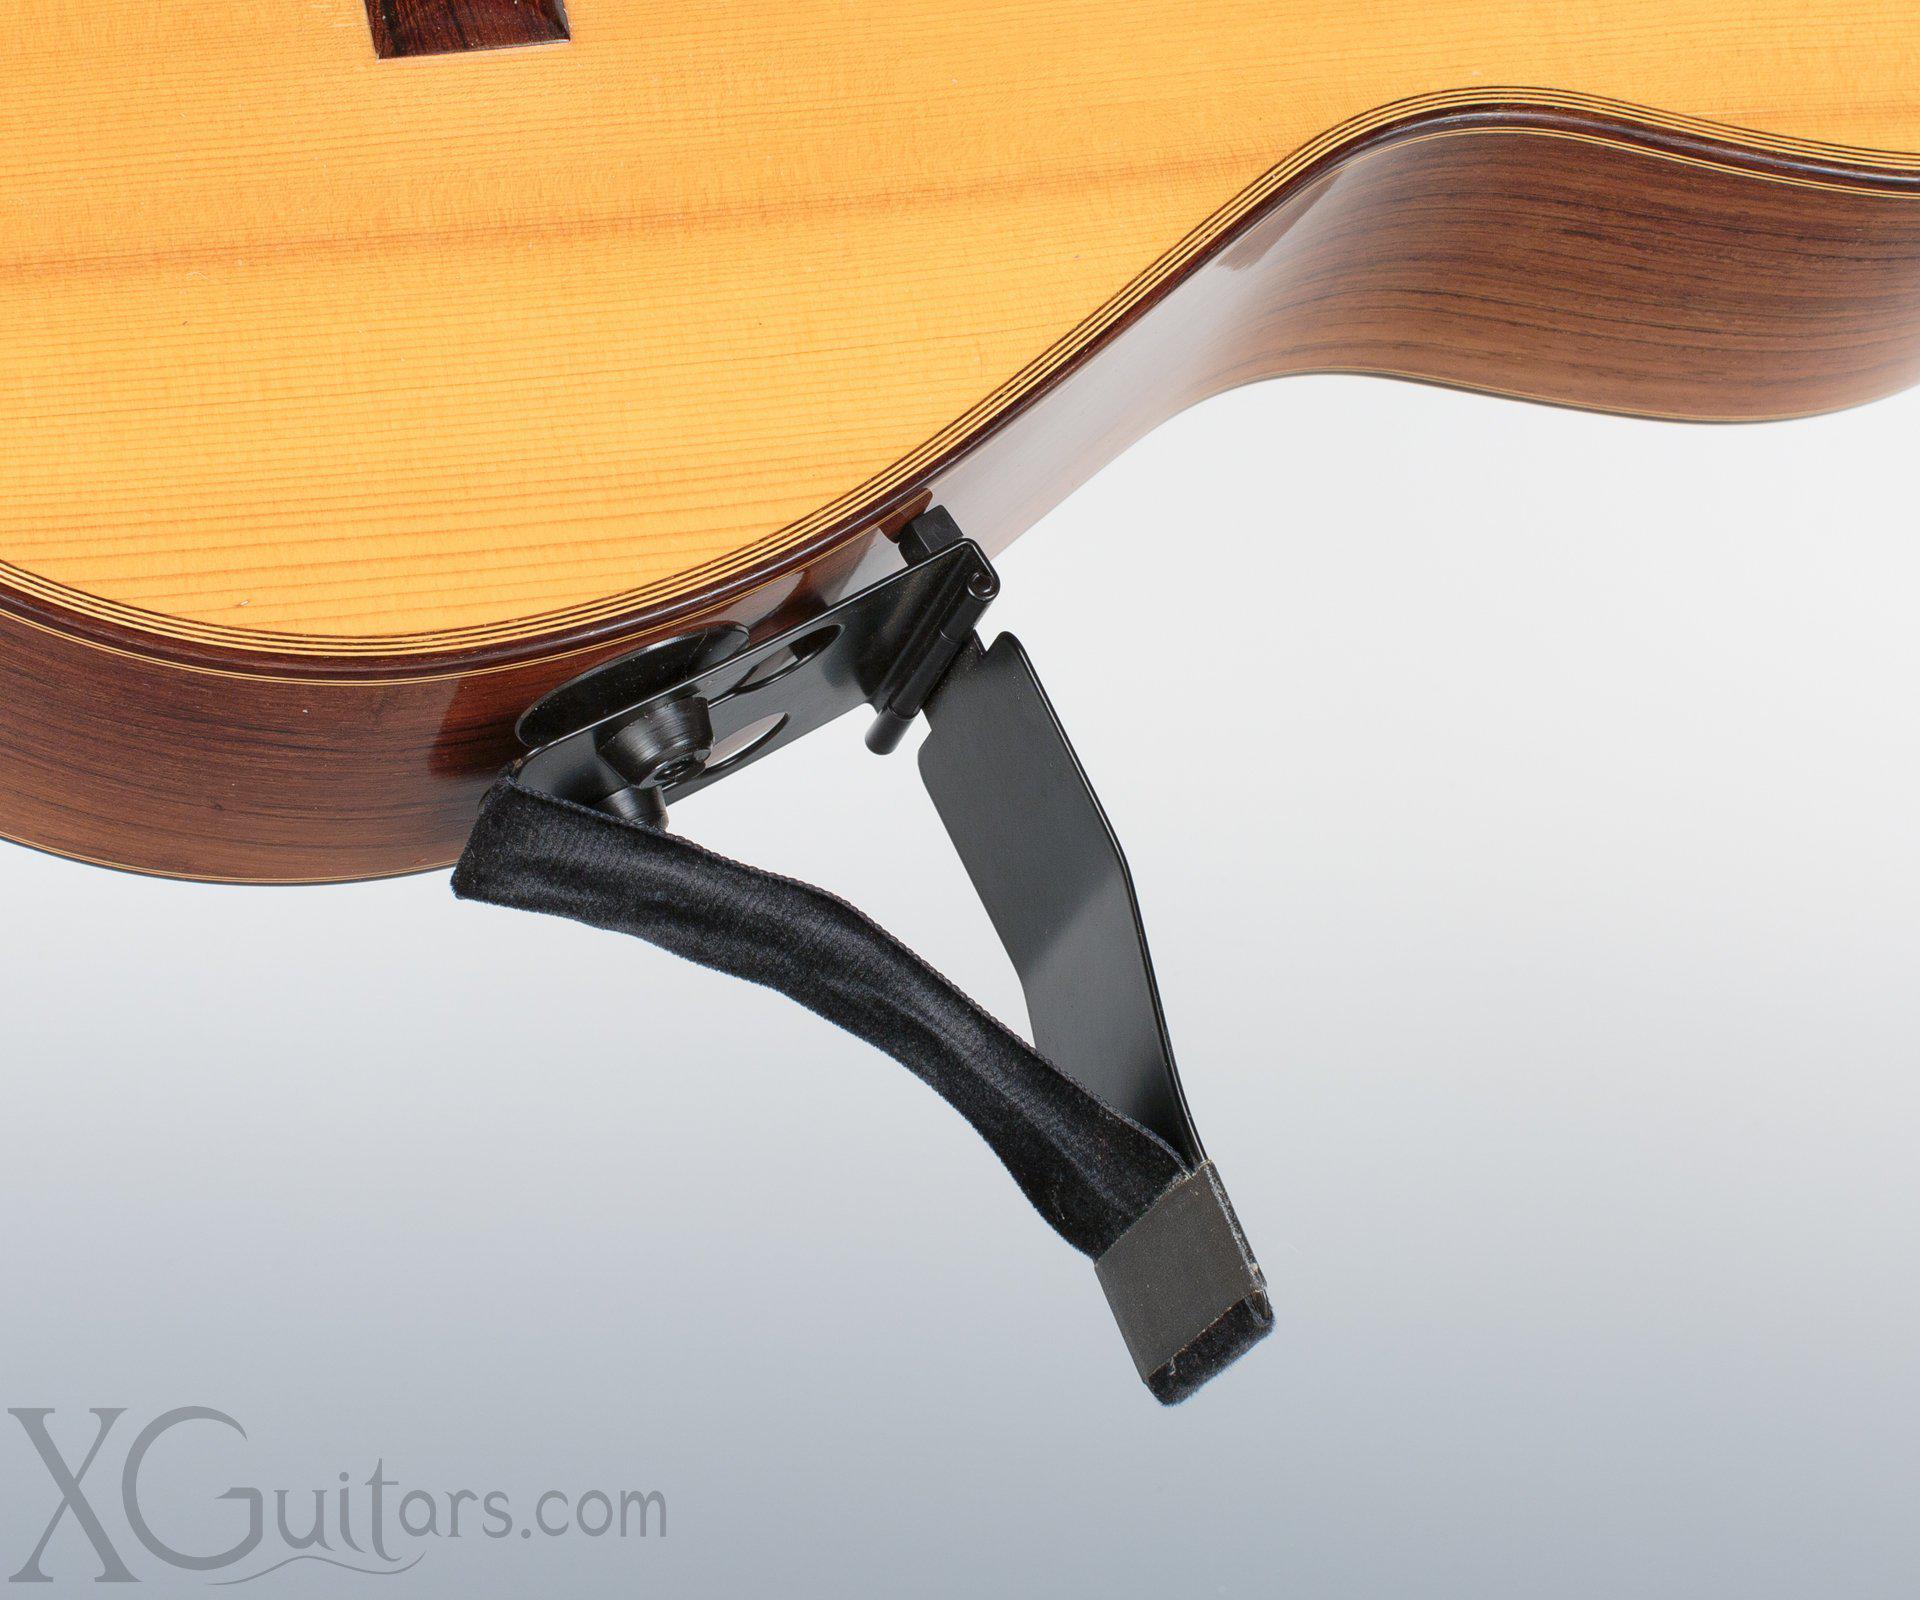 Gitano Guitar Support - for Flamenco or Classical Guitars